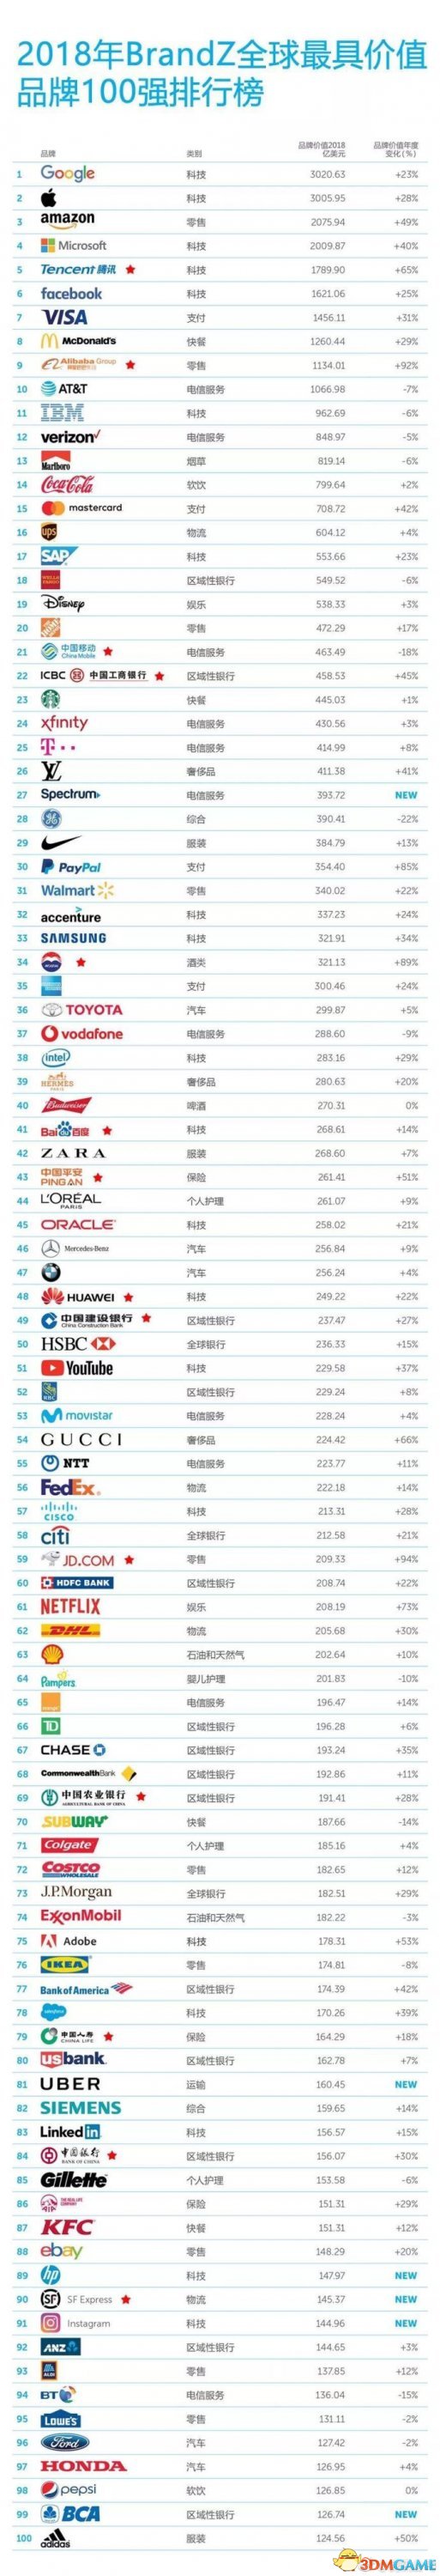 全球品牌价值100强排行榜出炉 腾讯排名全球前五